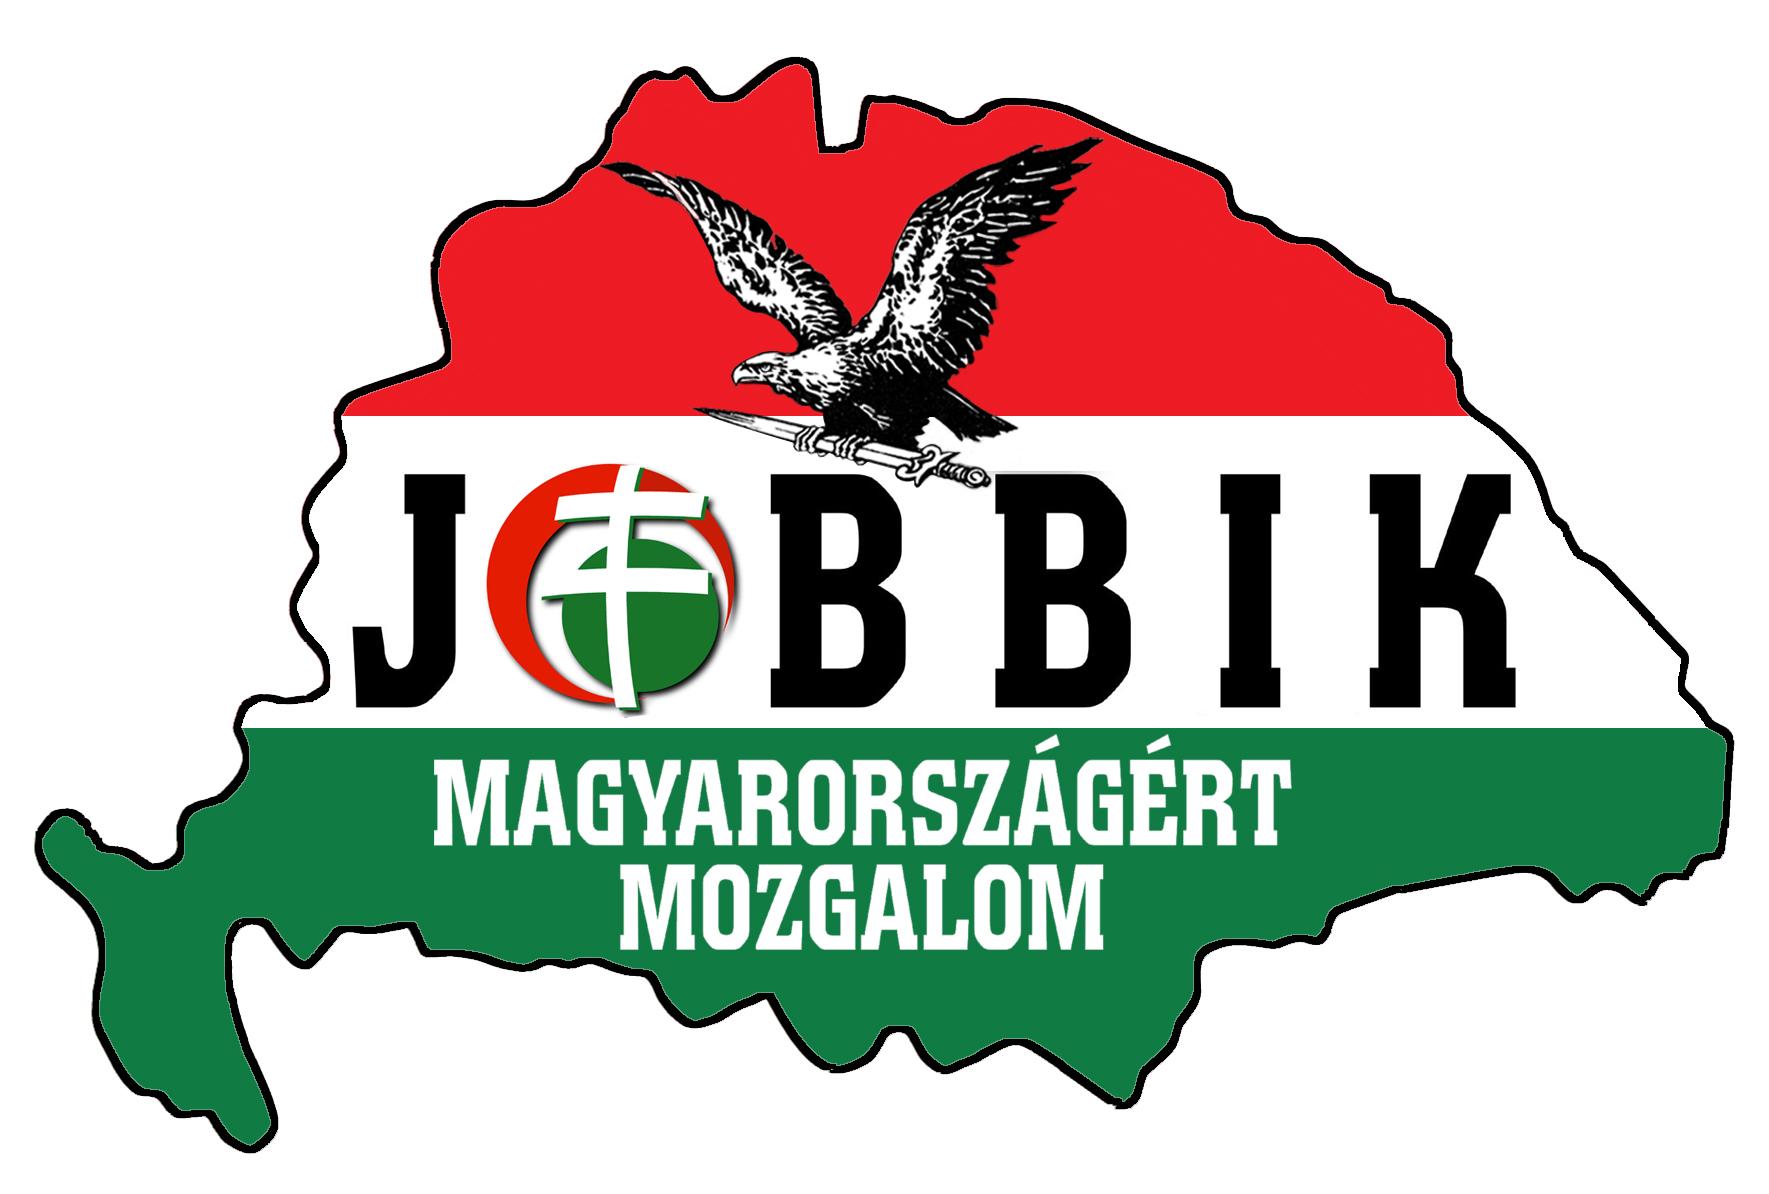 אחד מסמלי מפלגת הימין הקיצוני ההונגרית, 